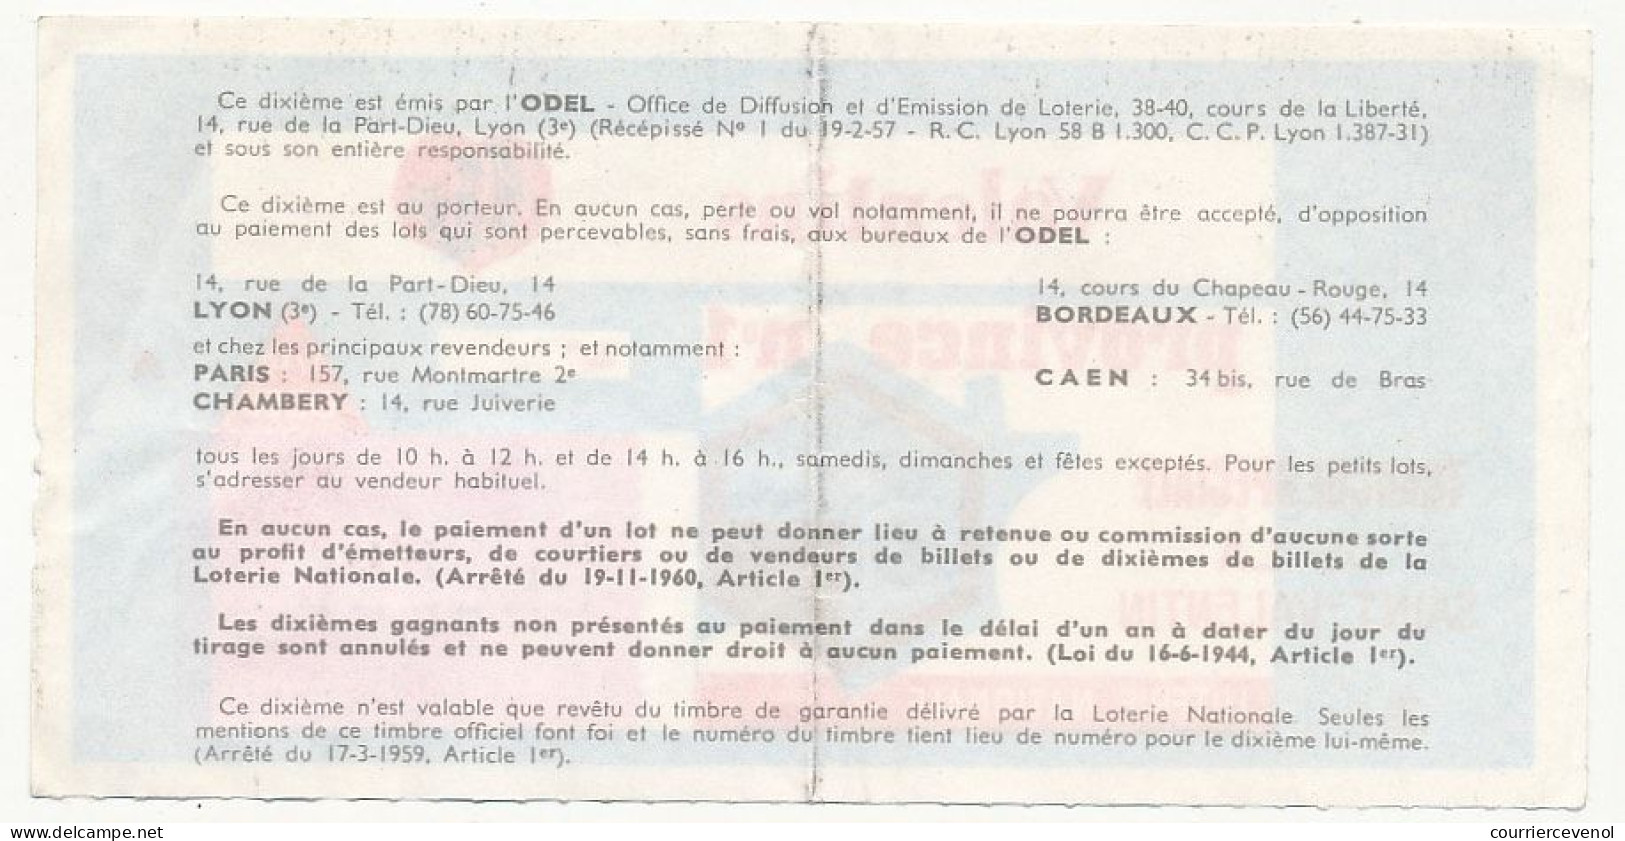 FRANCE - Loterie Nationale - Double Tranche Saint Valentin - Les Ailes Brisées - 1/10ème 1968 - Série A - Billets De Loterie